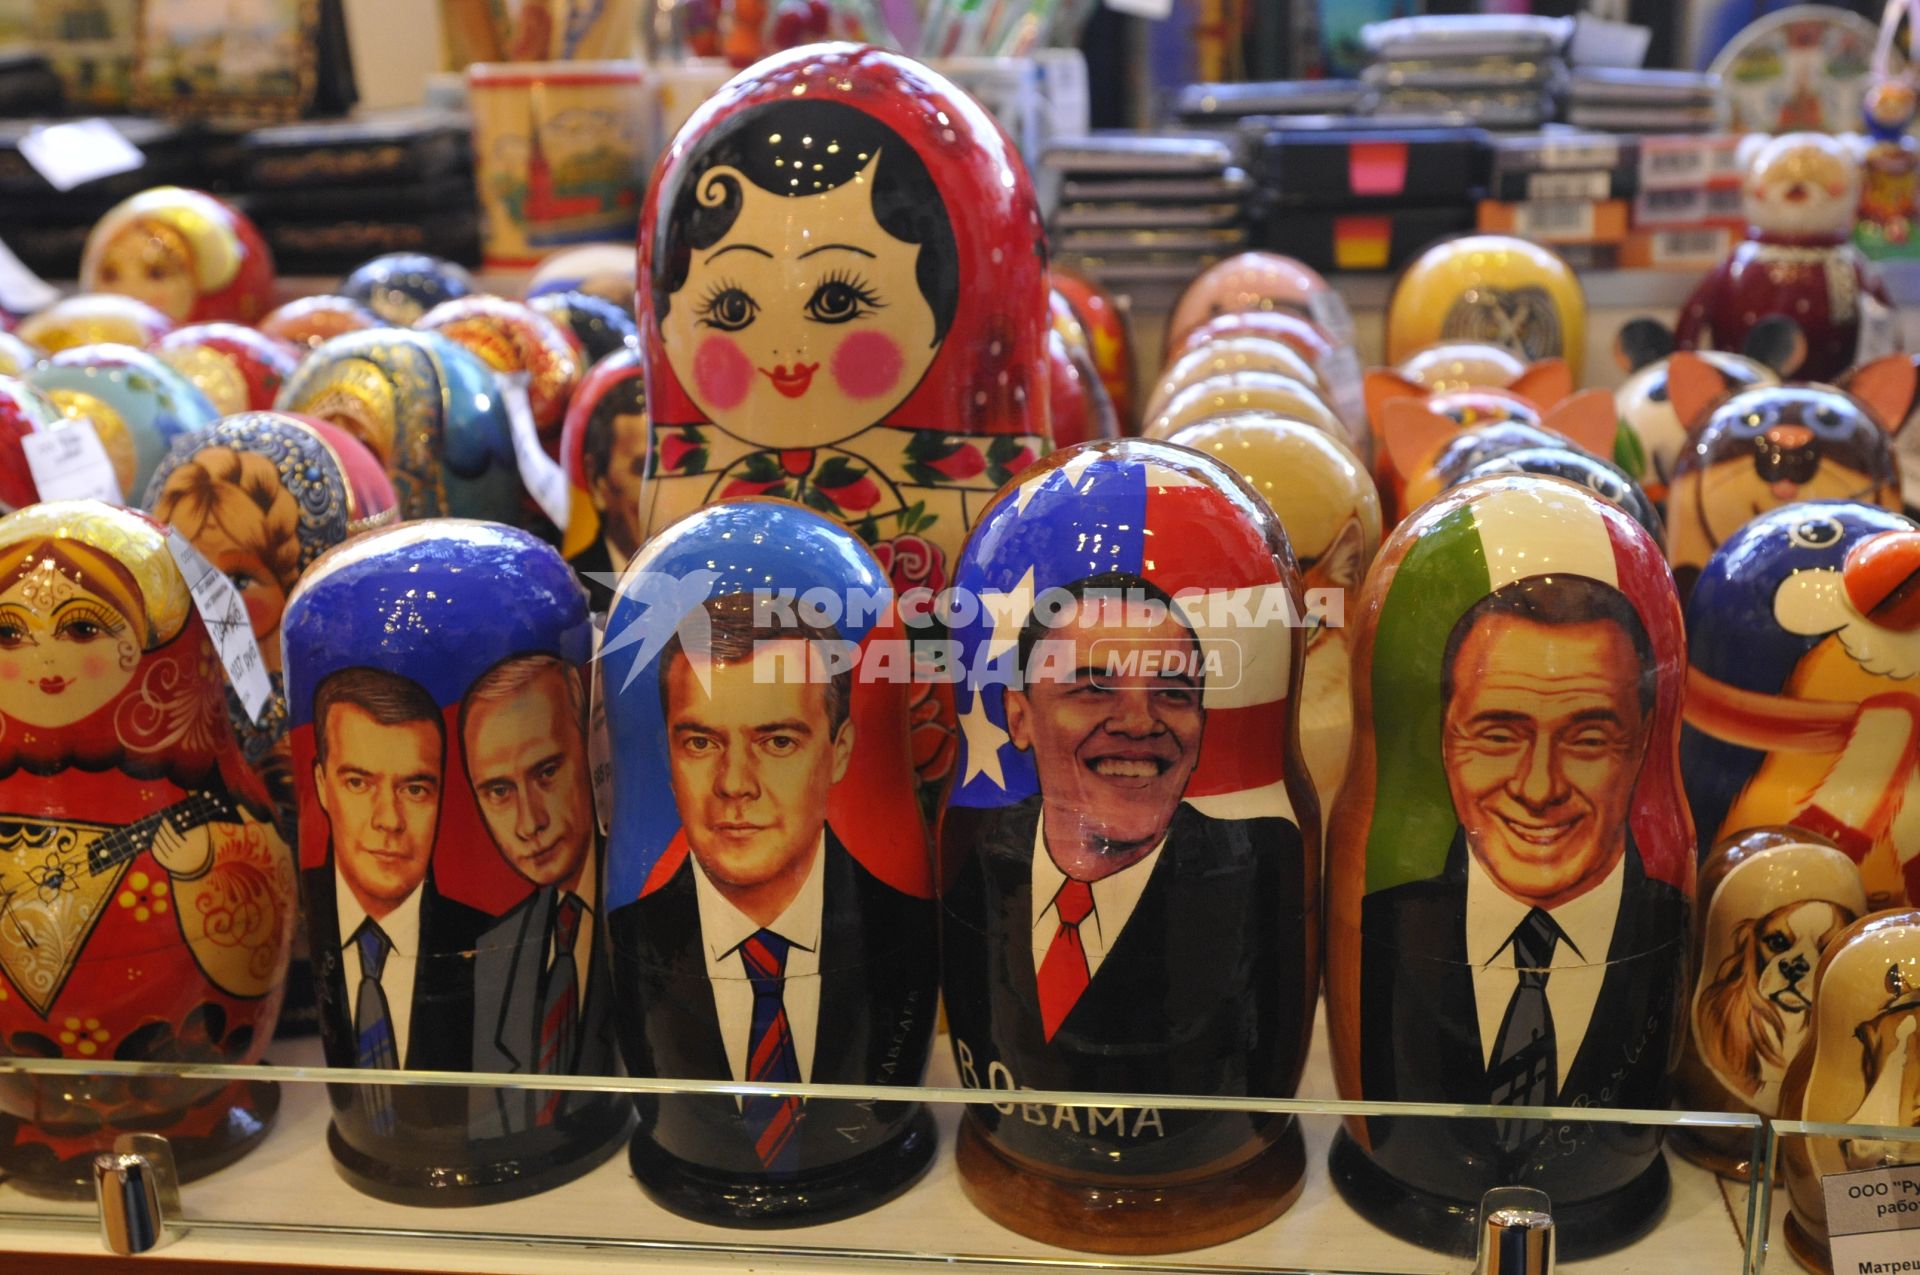 Продажа сувенирной продукции. На снимке: матрешки с изображением Медведева, Путина, Обамы и Берлускони.